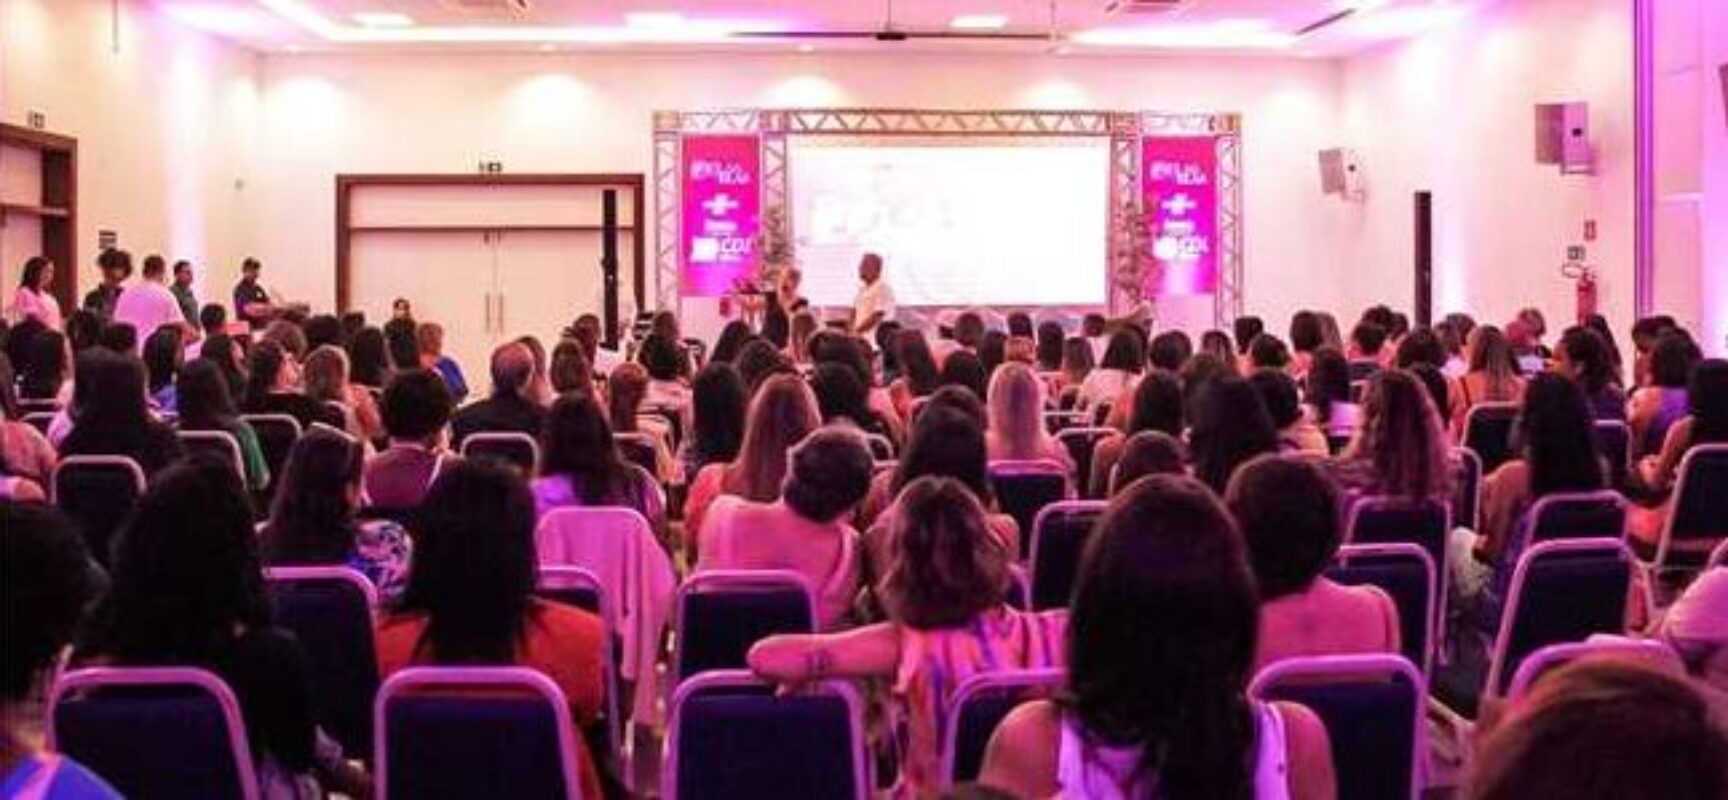 Seminário ‘Delas para Elas’ inspira mulheres empreendedoras a conquistar protagonismo nos negócios